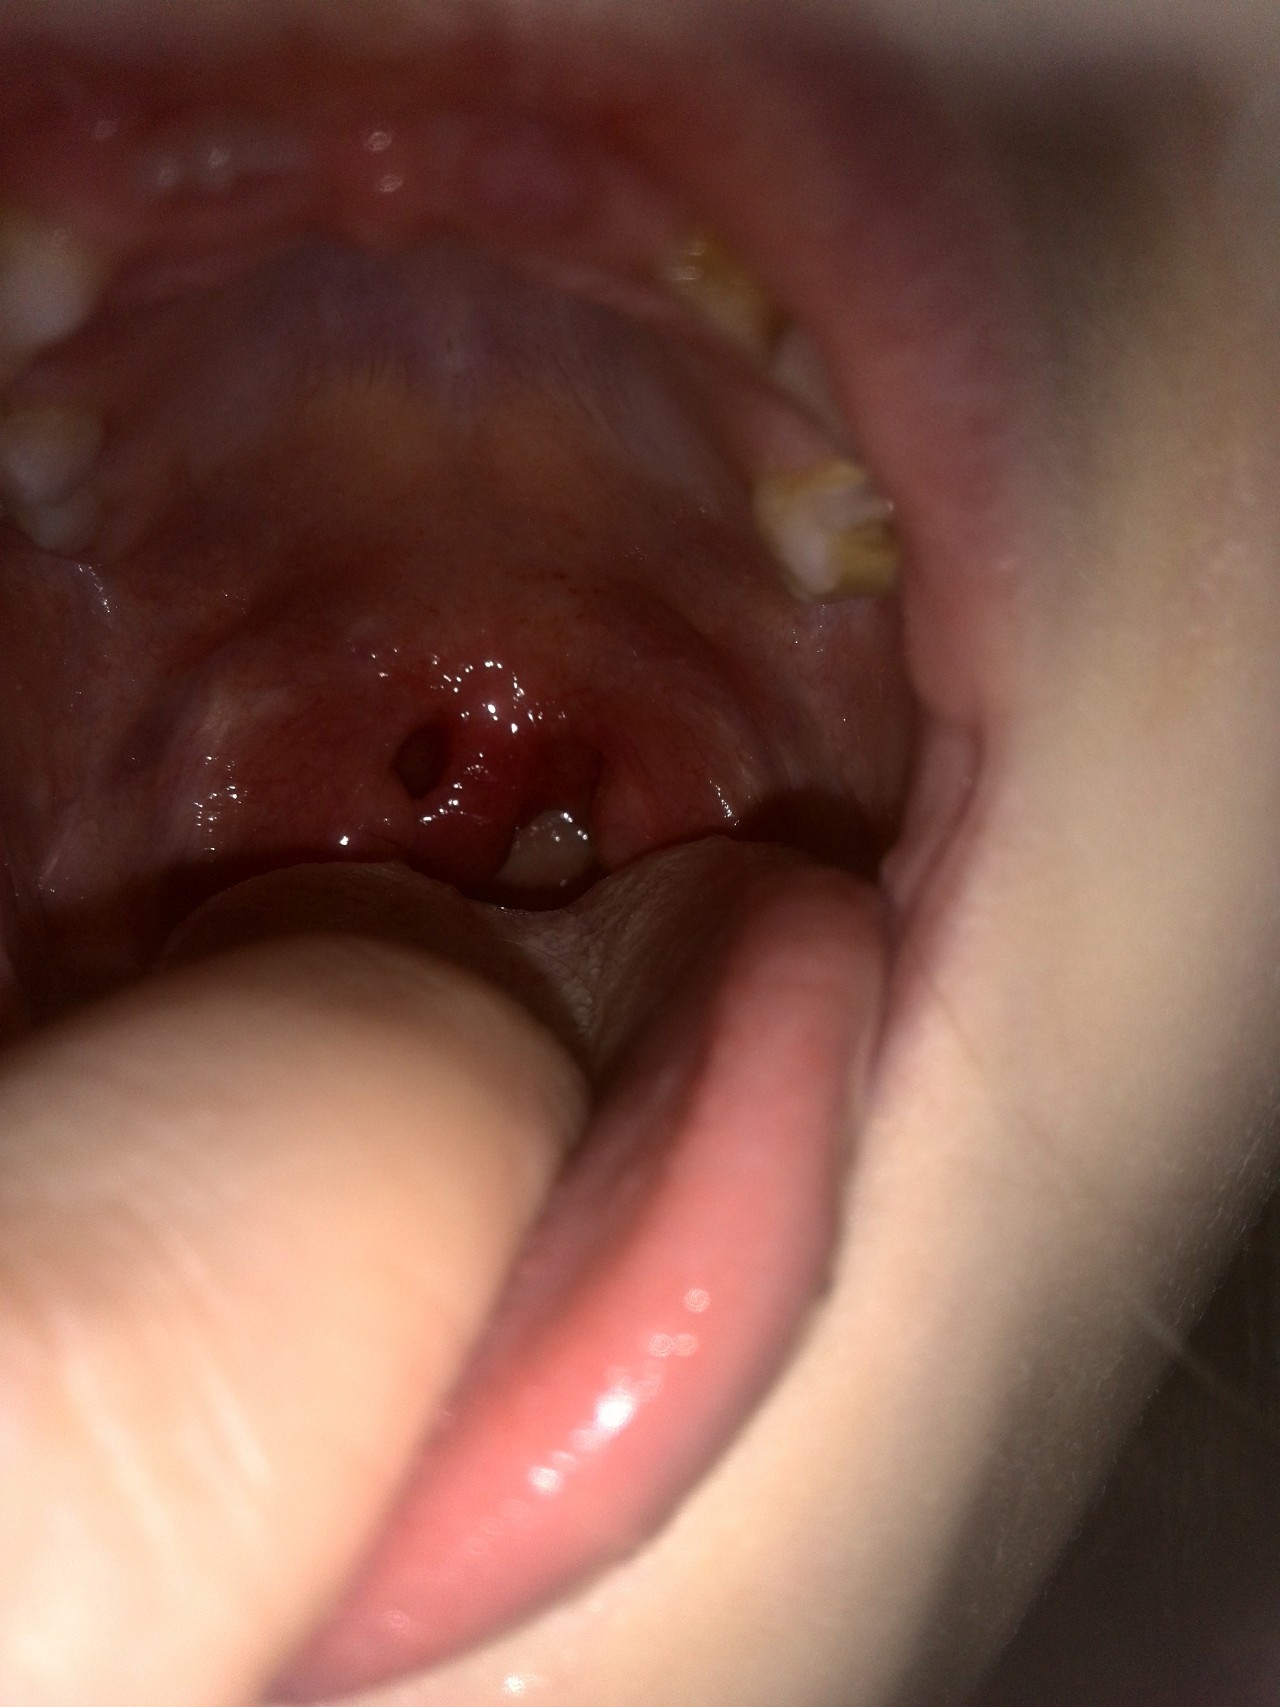 Нёбный язычок прилип к нёбной миндалине — МедВопрос и консультация врача на форуме